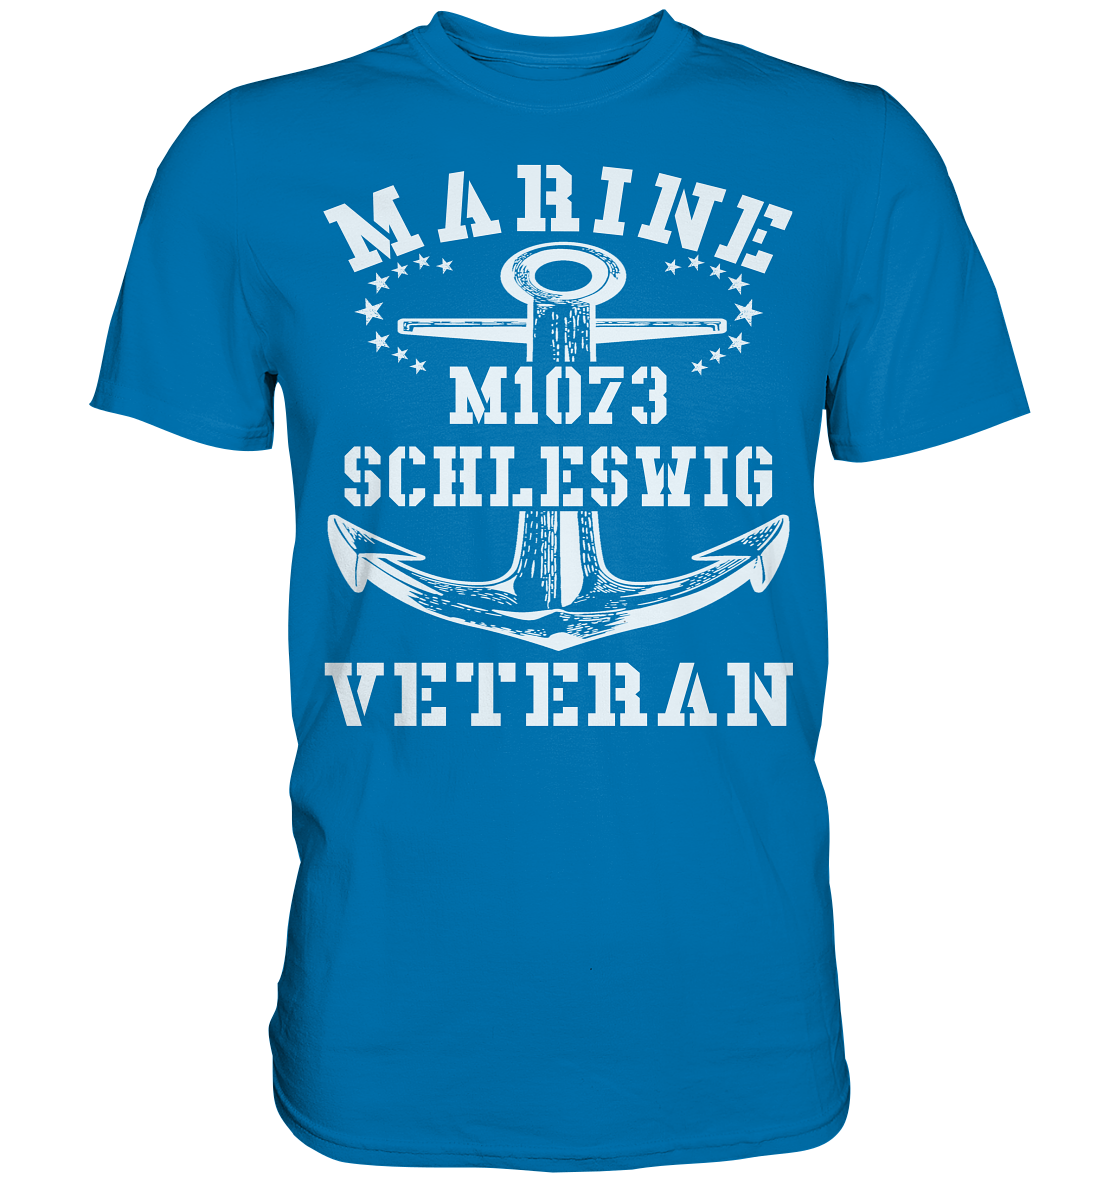 MARINE VETERAN M1073 SCHLESWIG - Premium Shirt